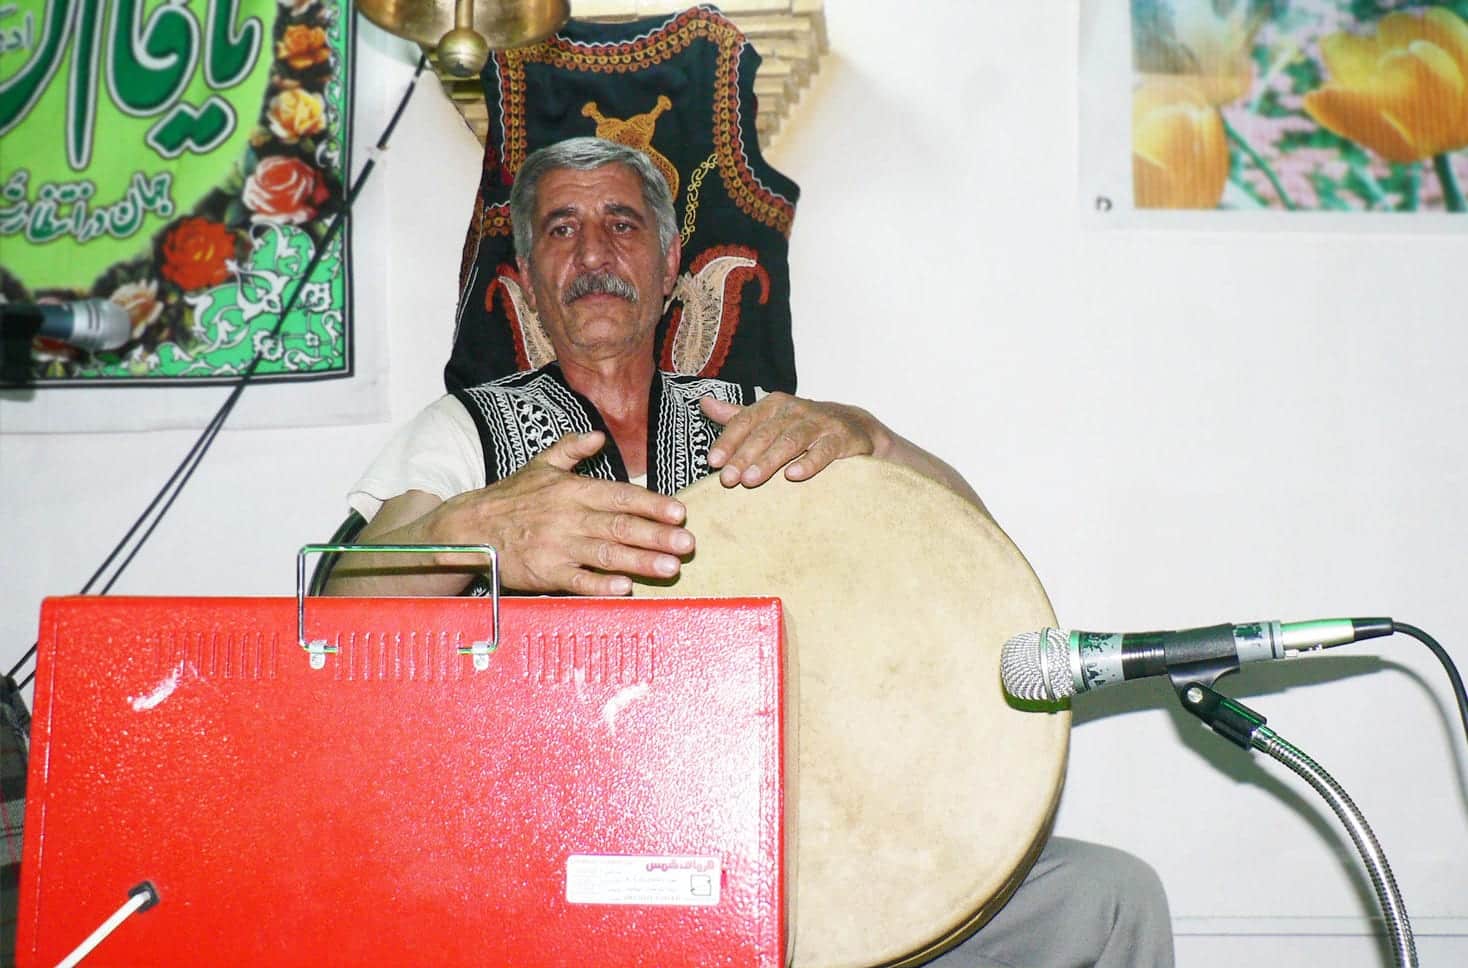 Zarb (Drum) Of The Zurkhane